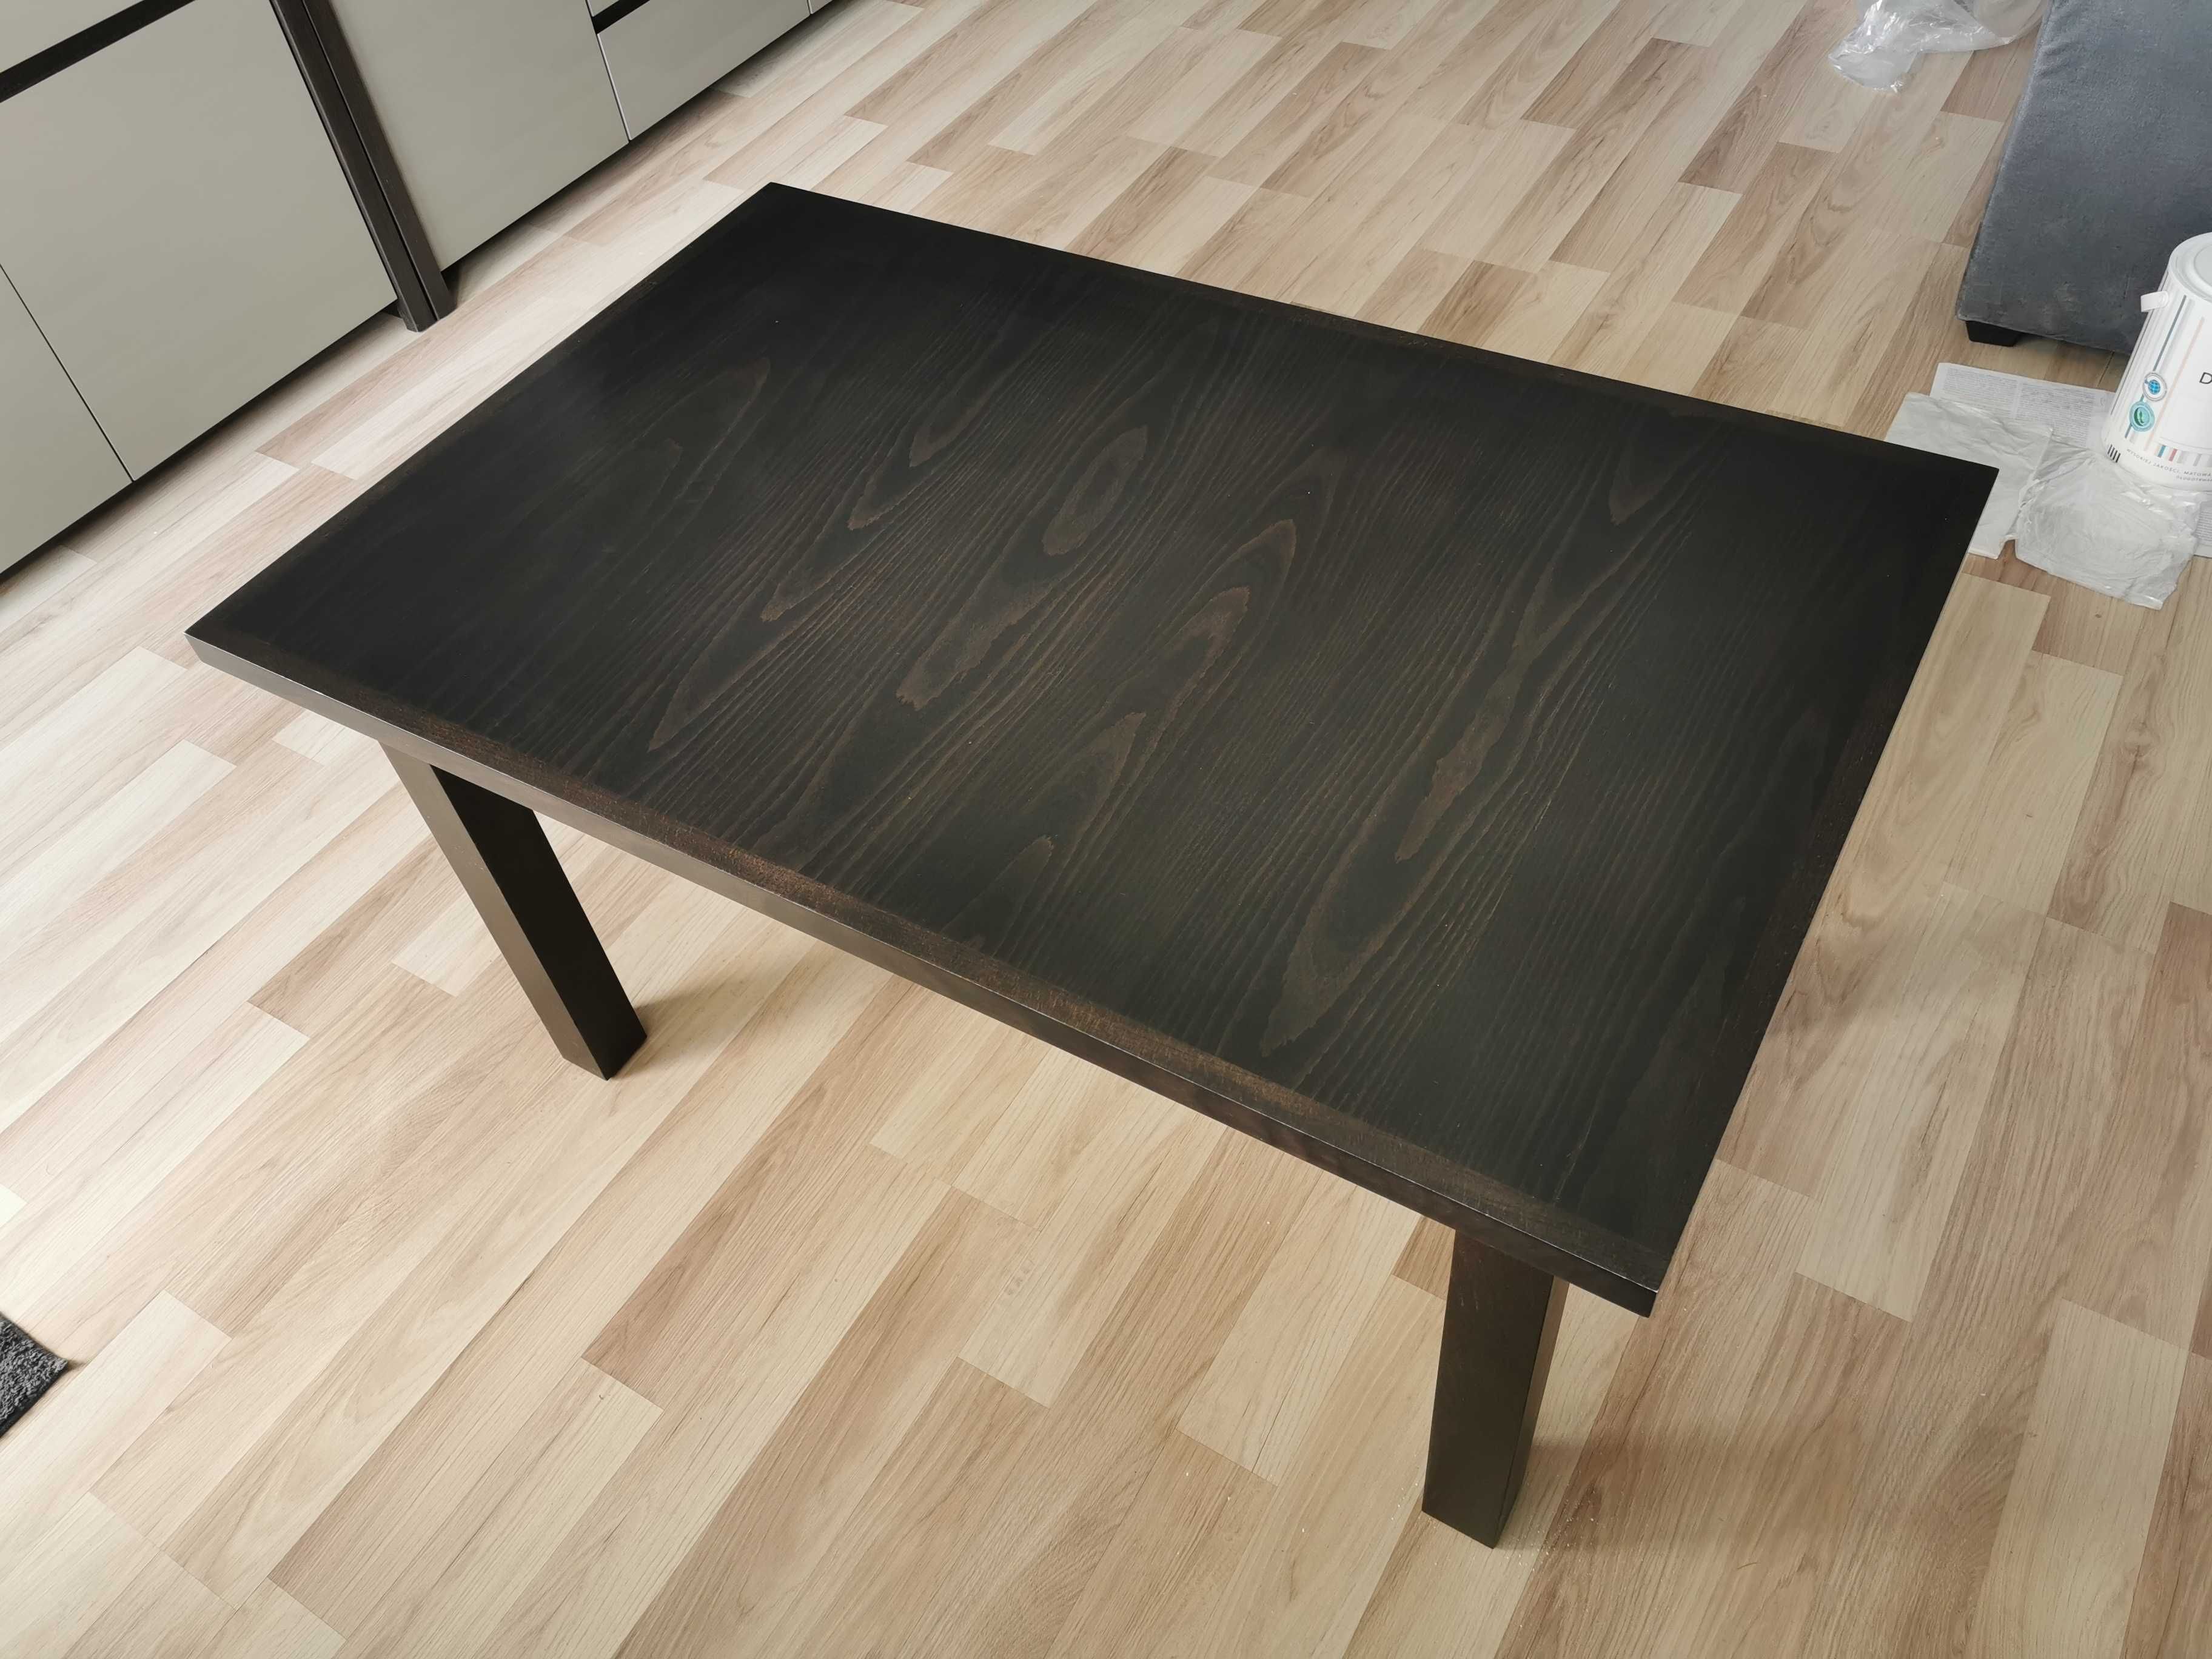 Stół, ława drewniana/fornirowana